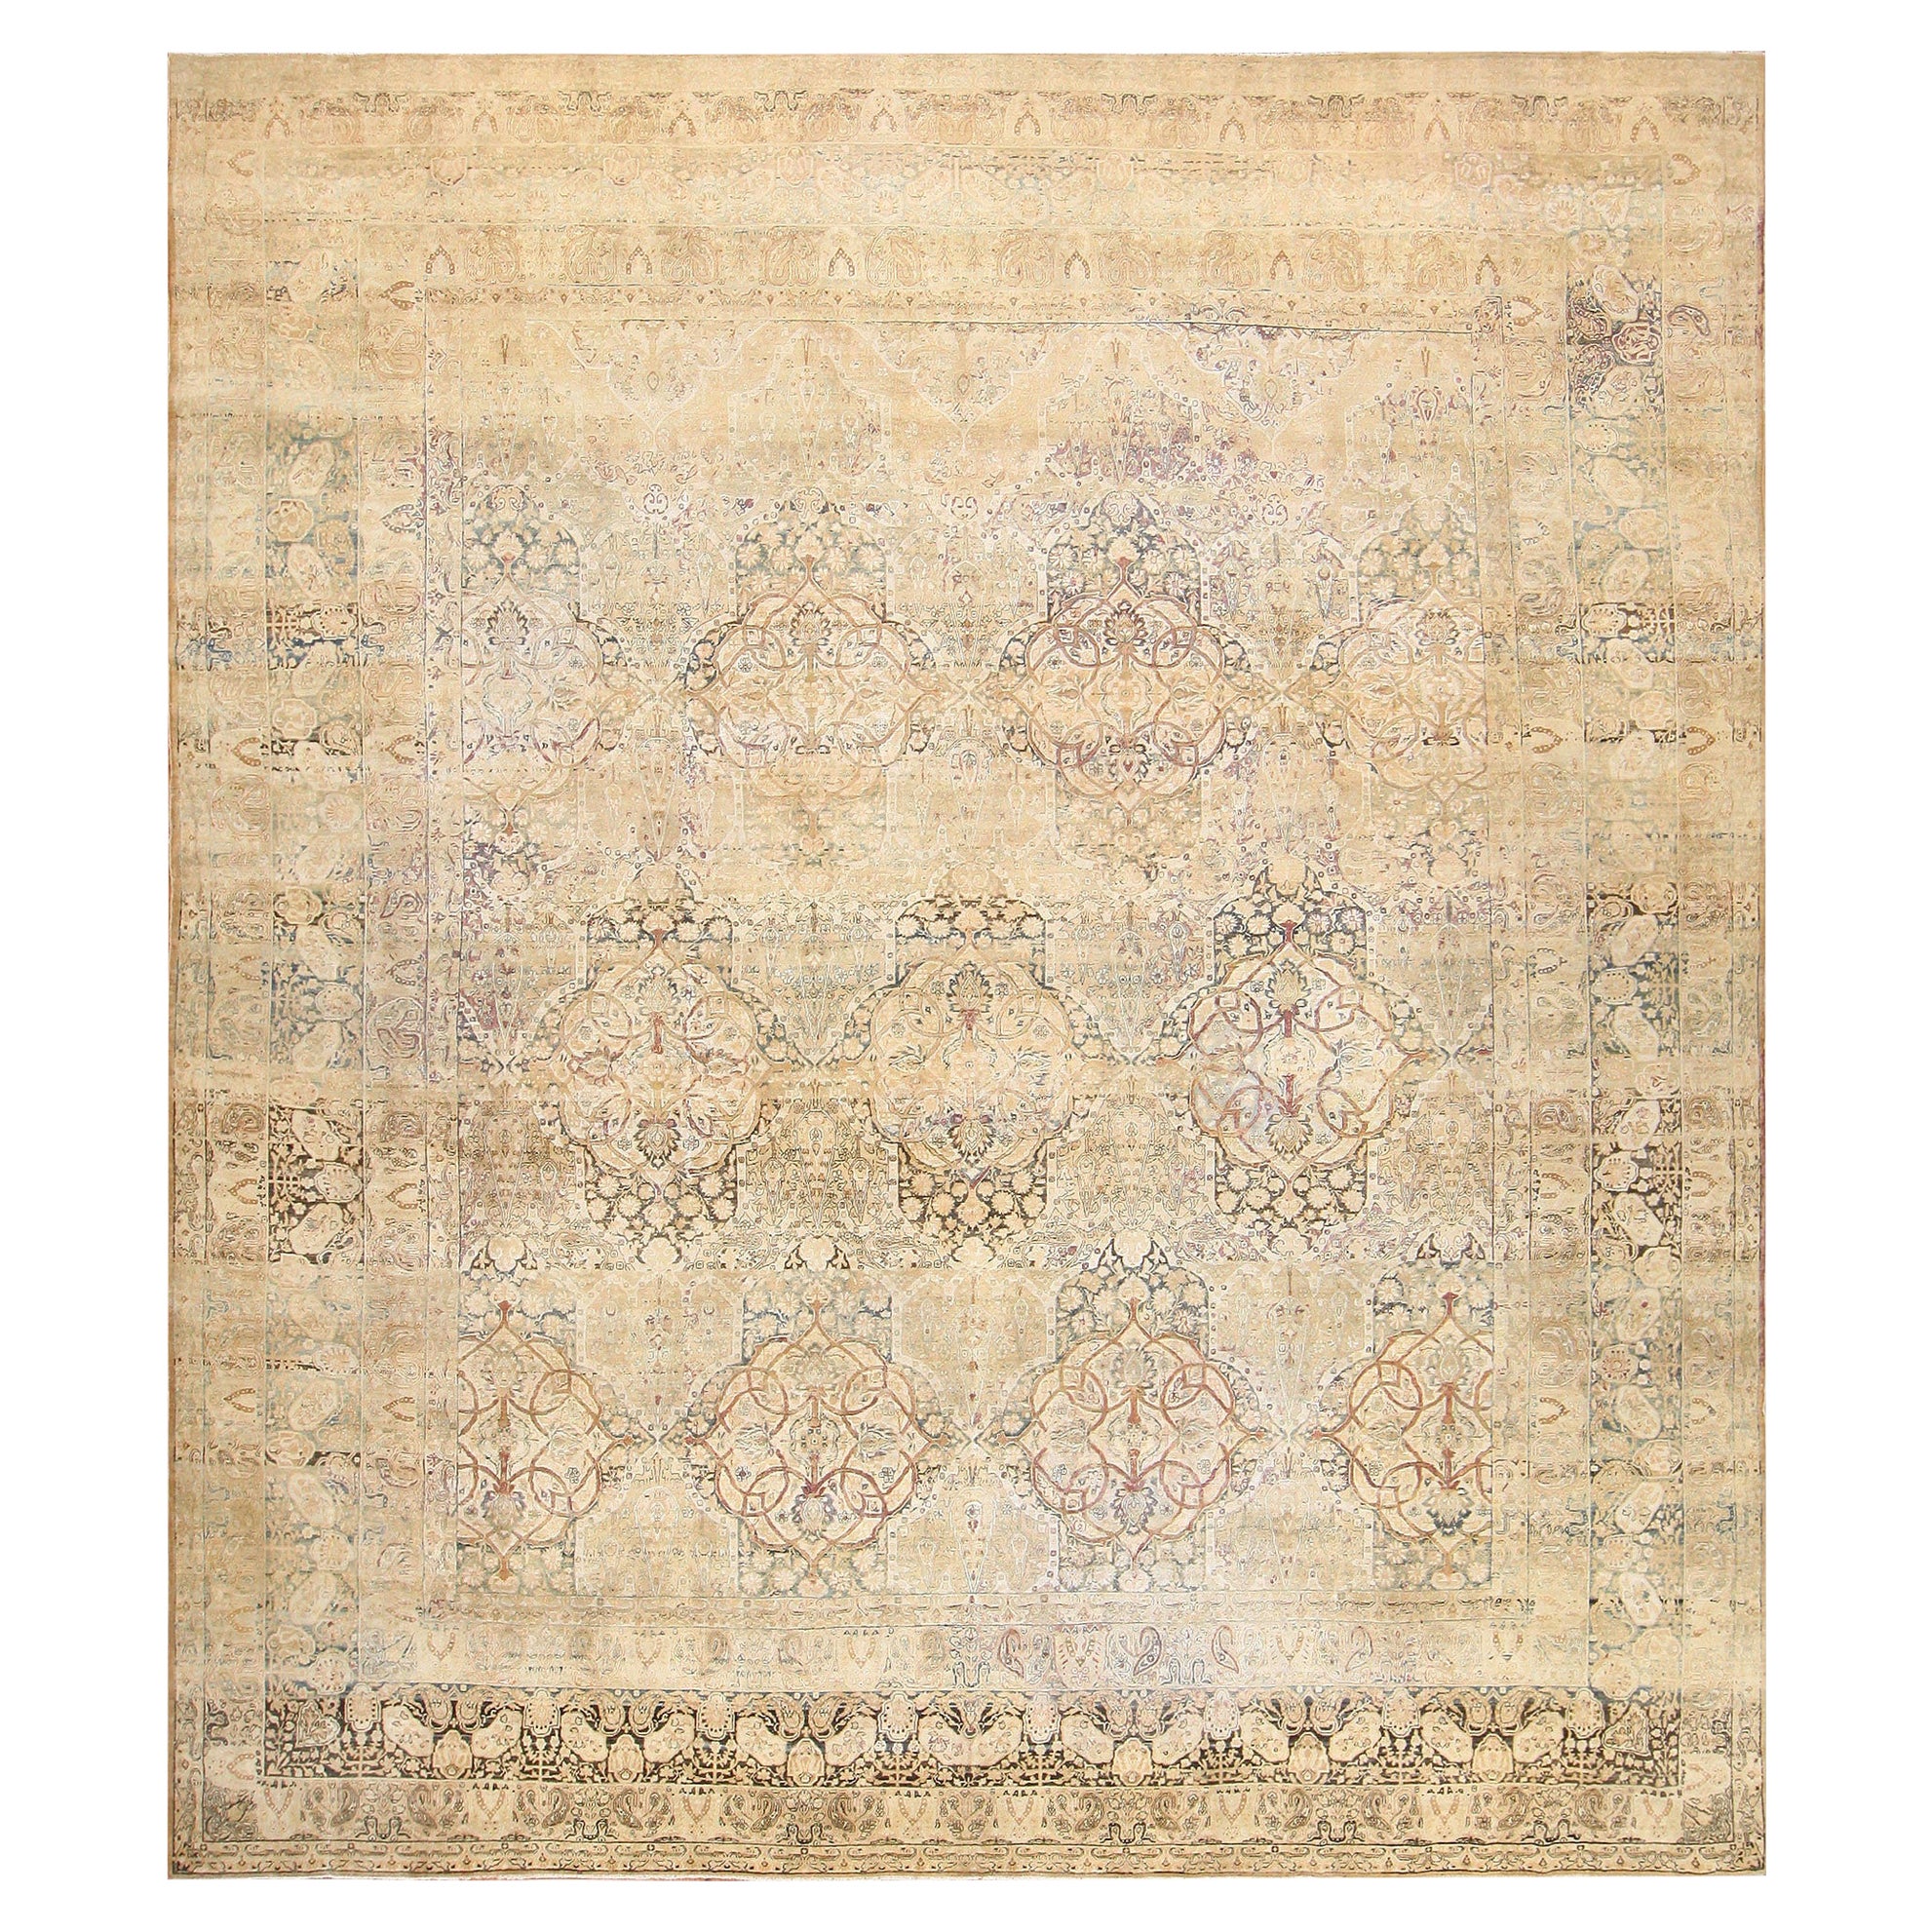 Large Size Fine Antique Persian Kerman Carpet 14'4" x 16'6"